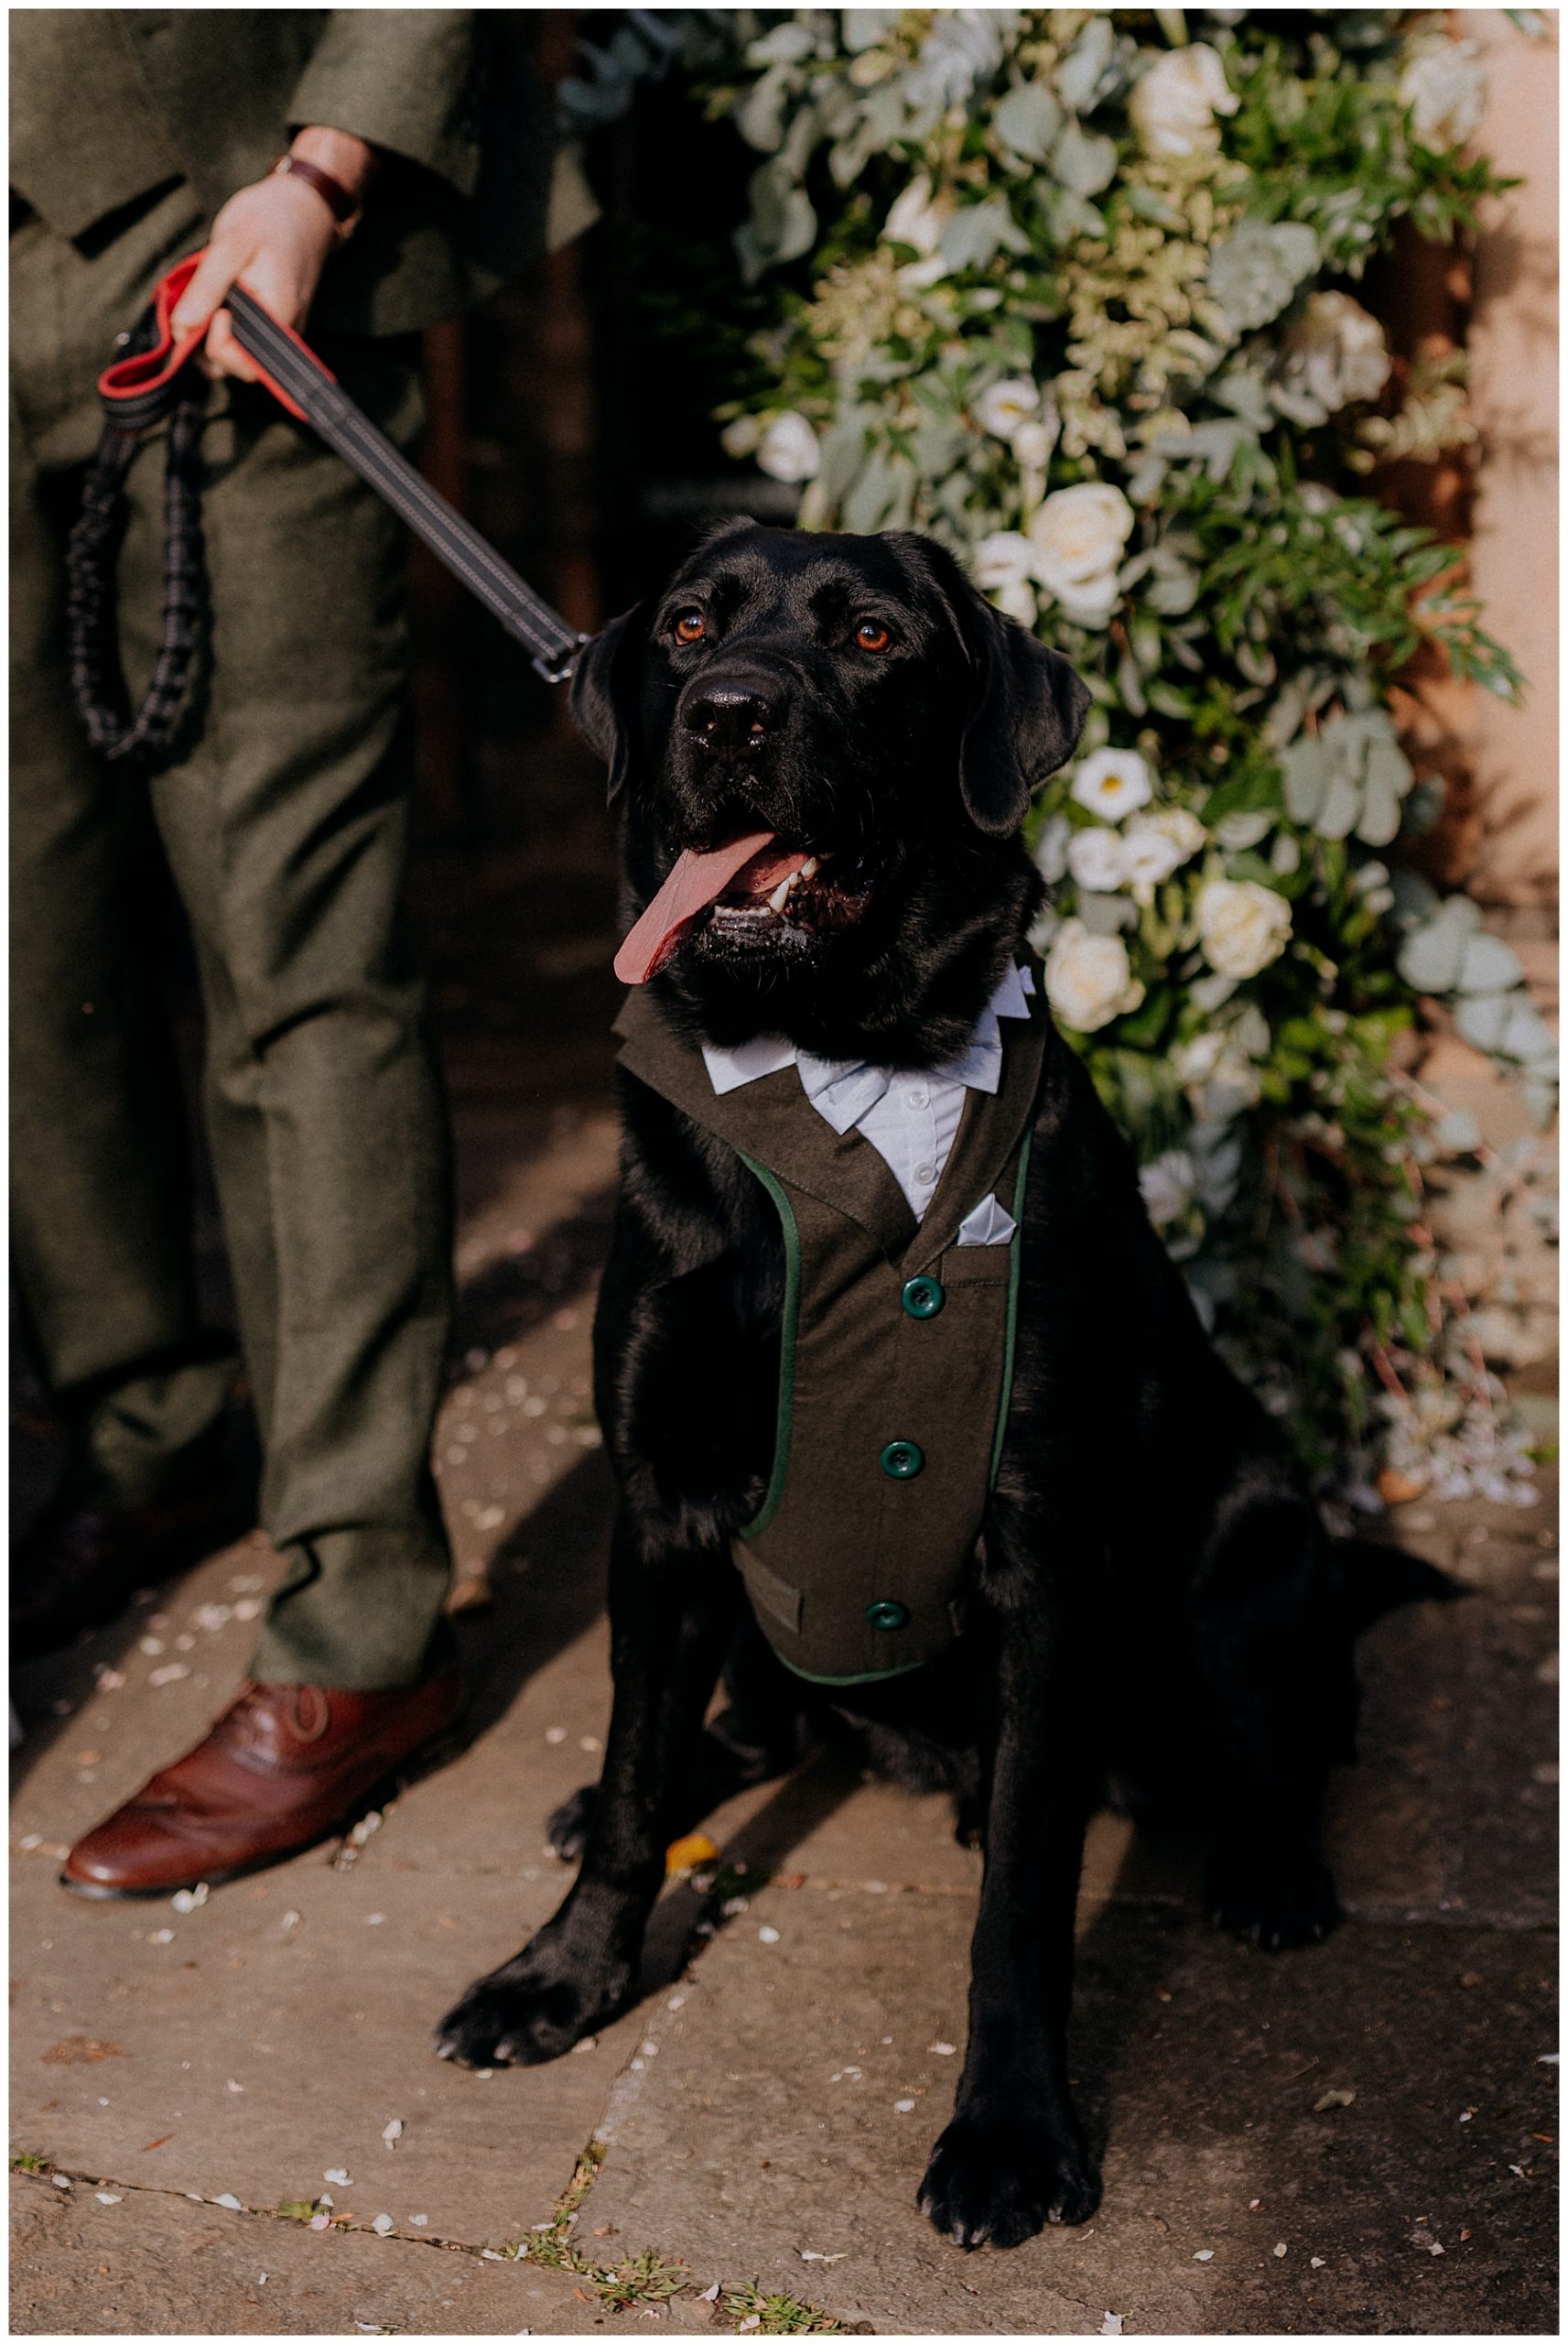 Creative Wedding Photography - Wedding Dogs